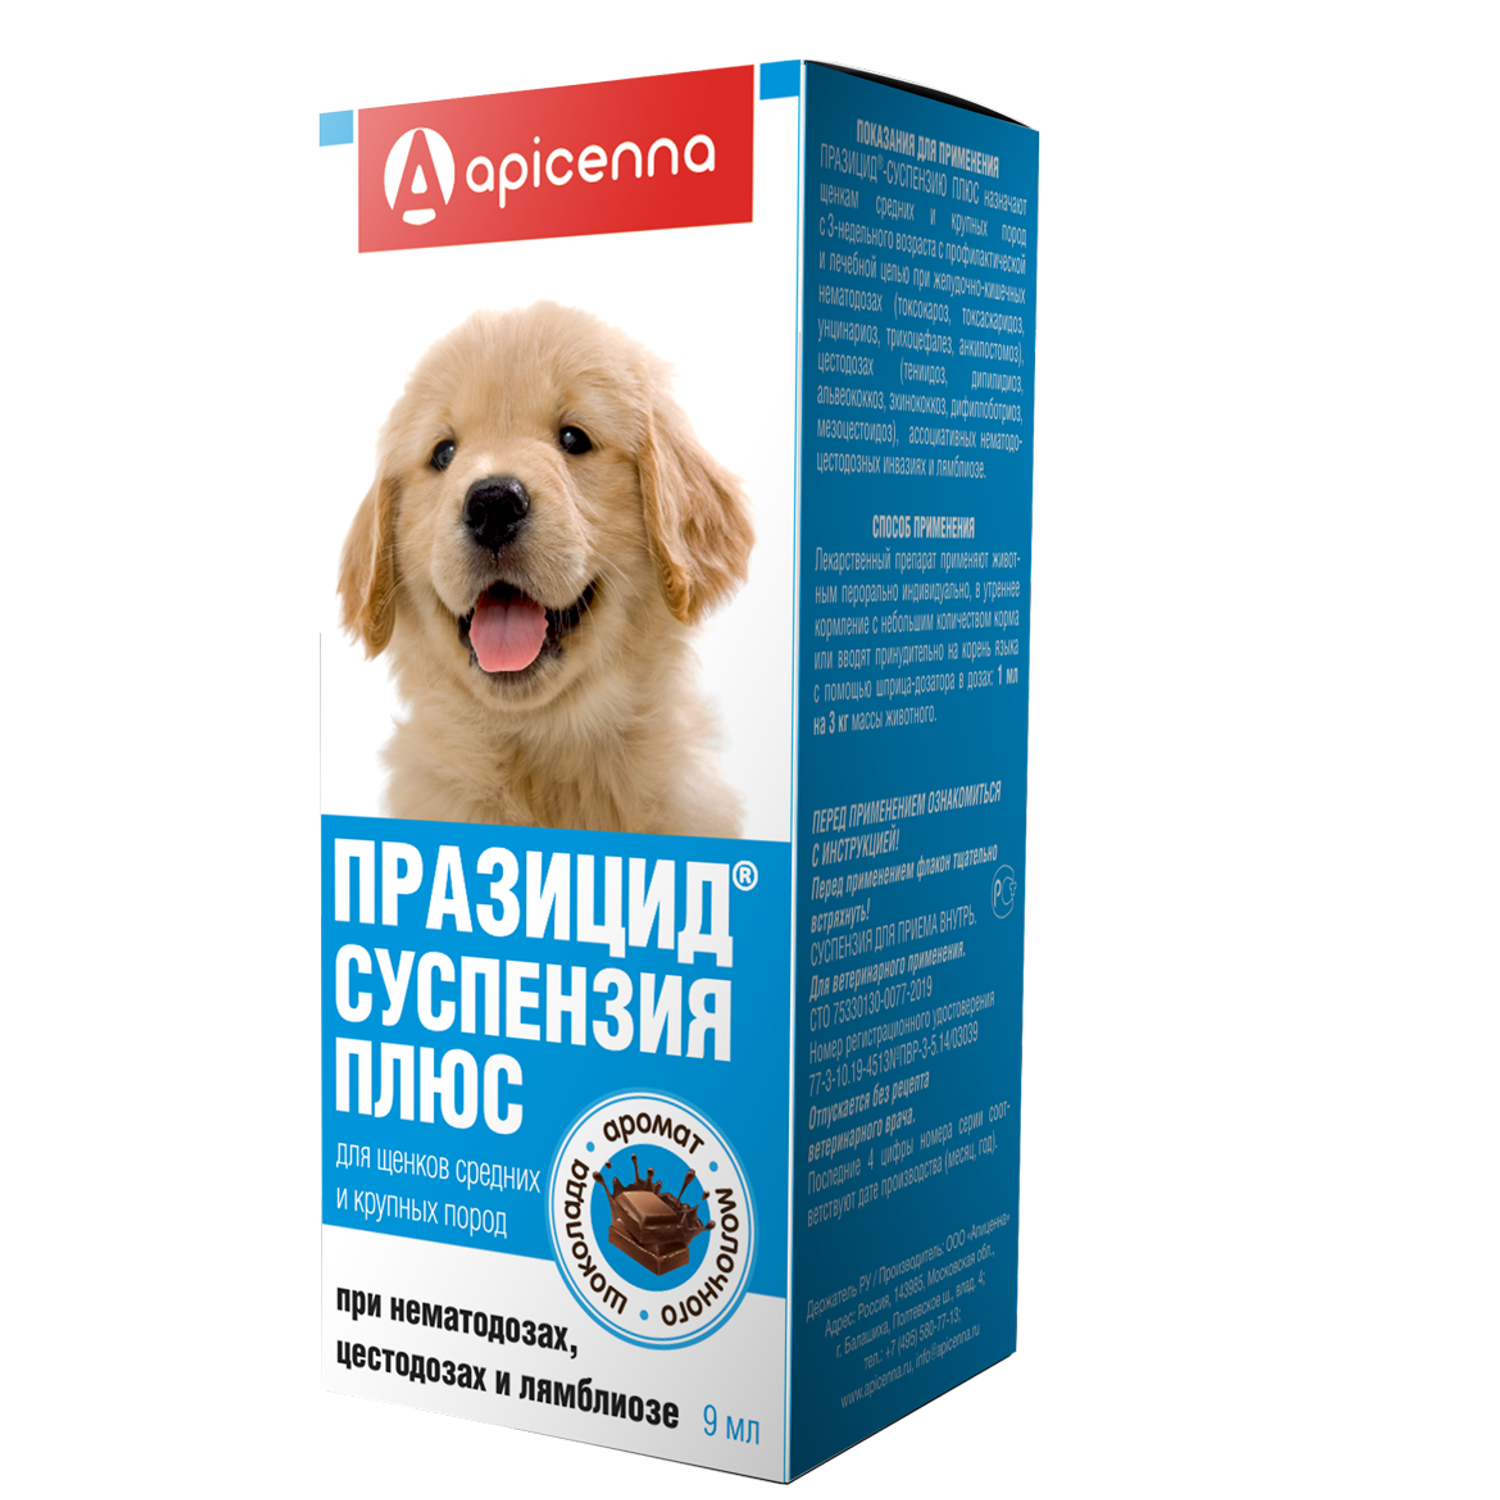 Препарат противопаразитарный для щенков Apicenna Празицид-суспензия Плюс средних и крупных пород 6мл - фото 1